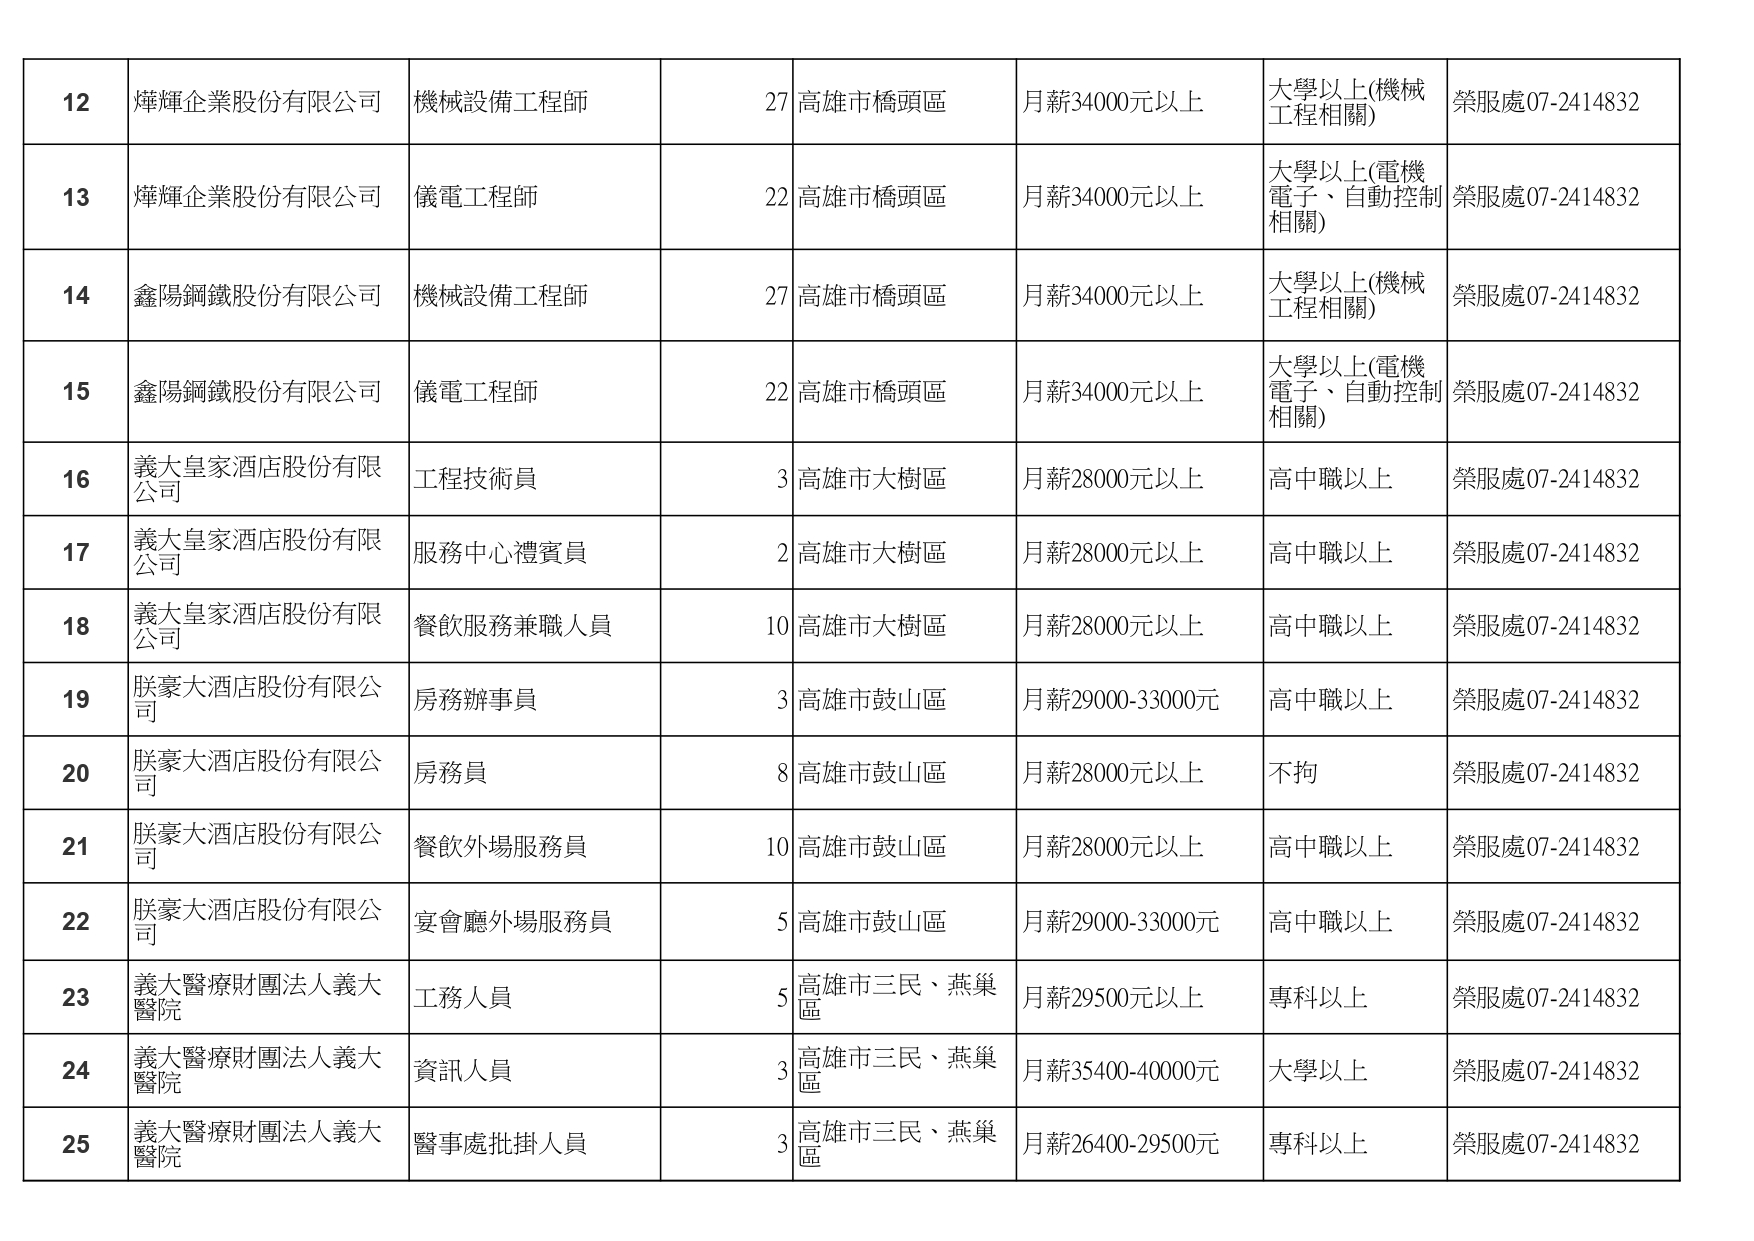 高雄榮服處-廠商職缺列表112.10.3_page-0002